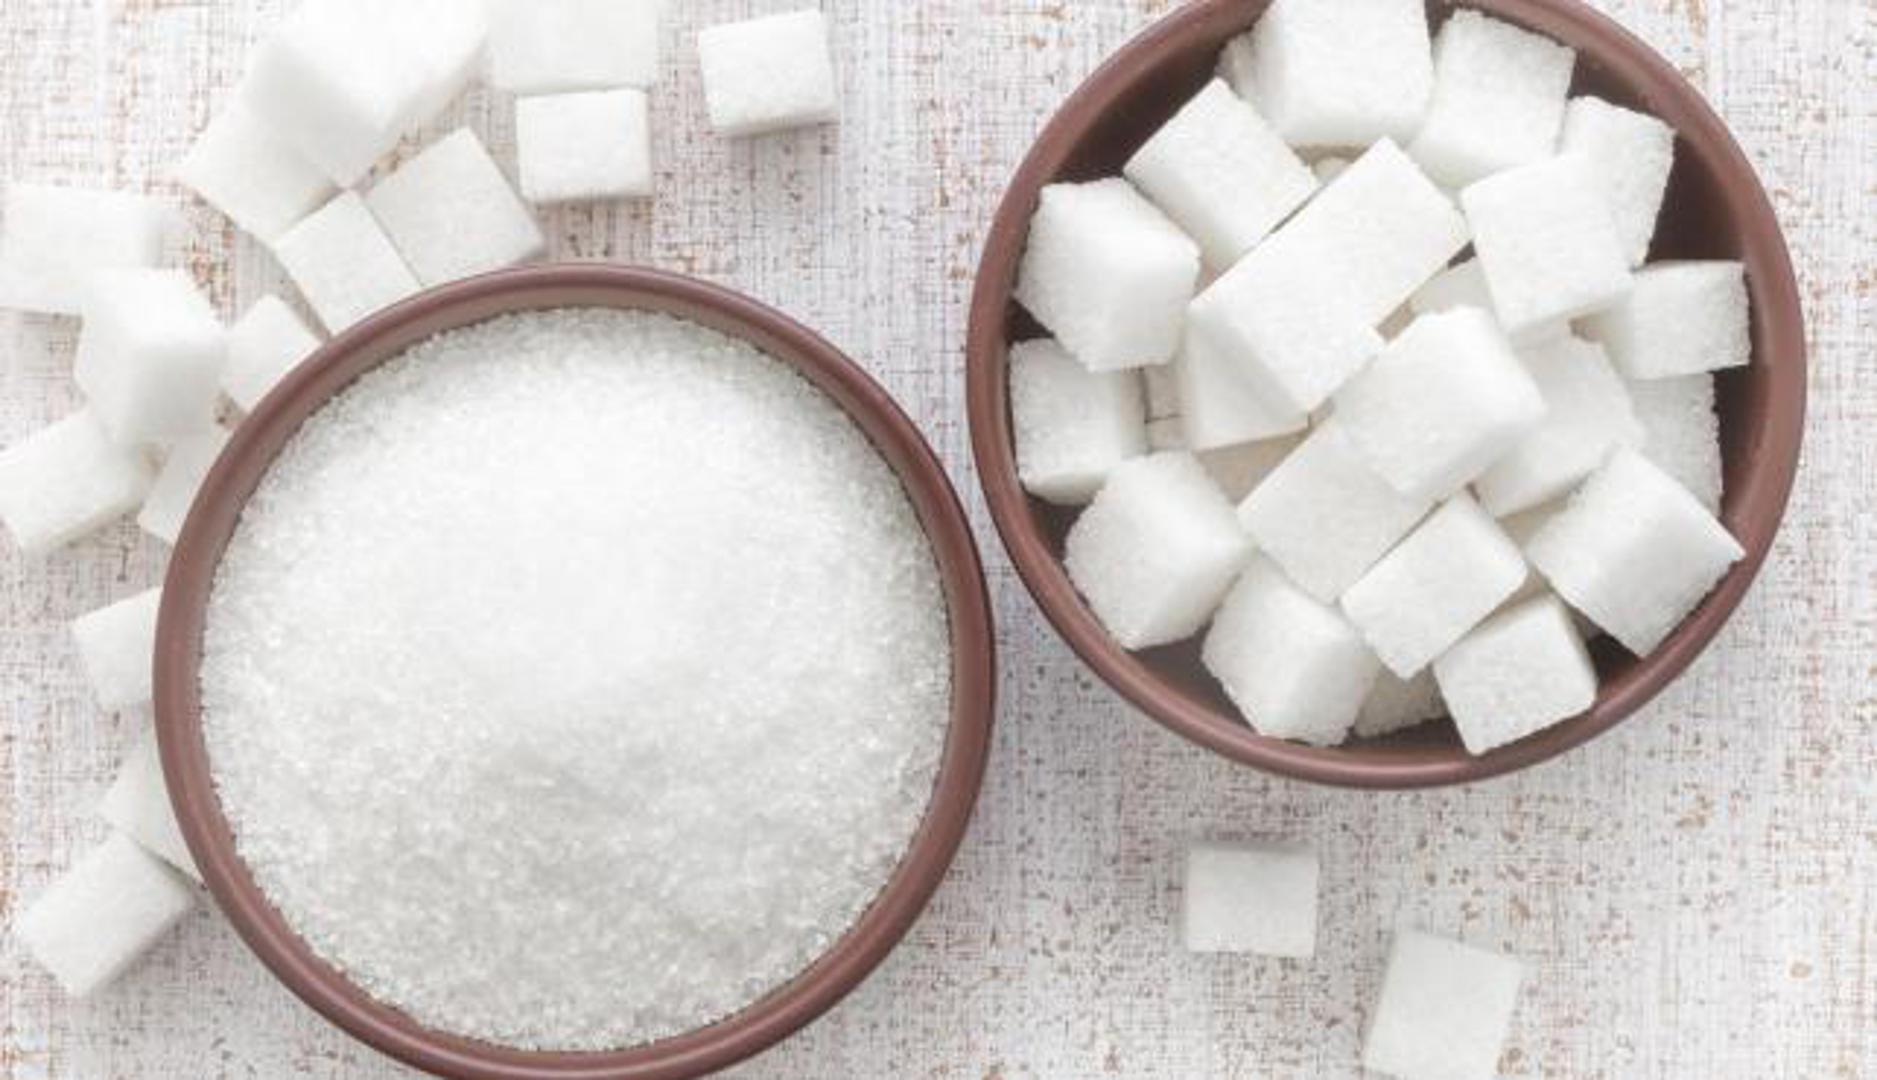 Ista stvar je i sa šećerom. Šećer trenutno dovodi do povećanja razine šećera u krvi, ali ona kasnije još više padne, pa putnici osjećaju da imaju manje energije nego prije, kažu stručnjaci...

